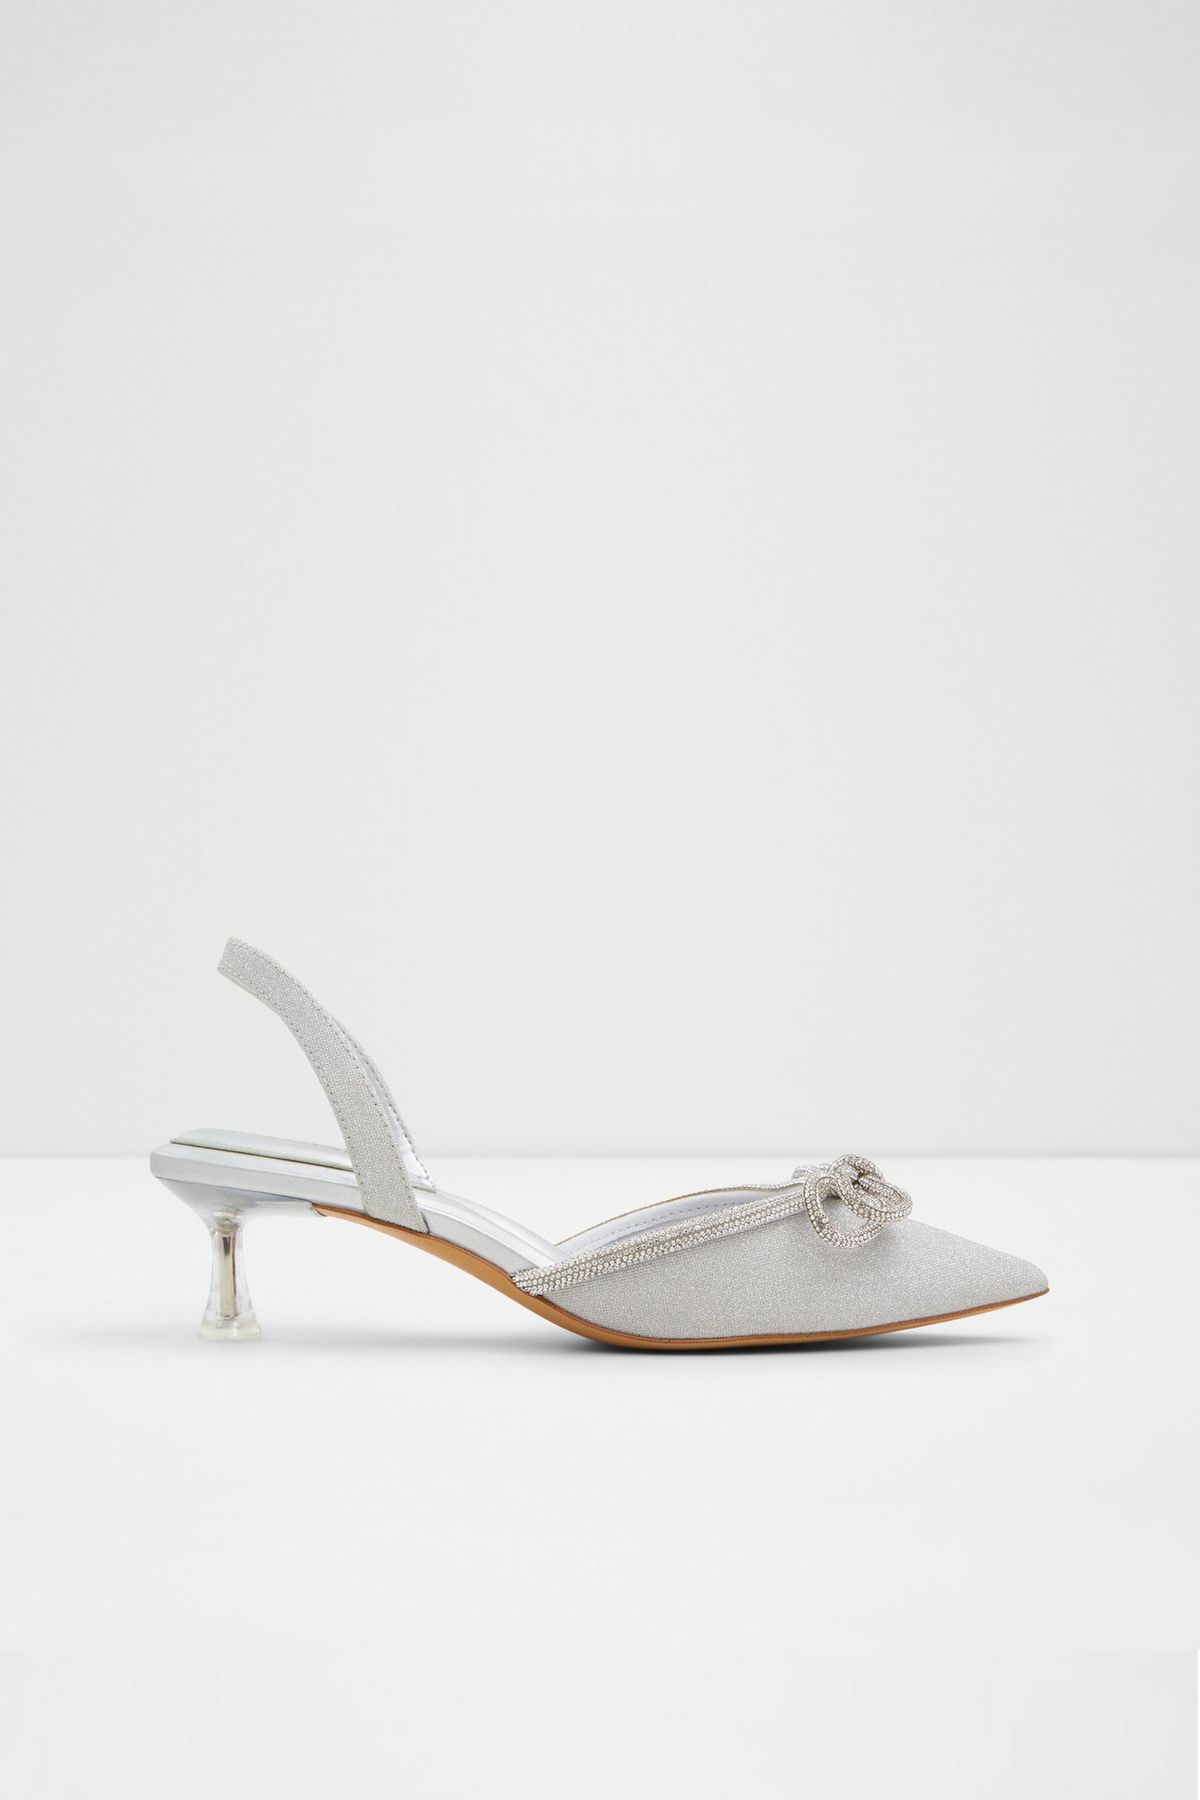 Aldo BOUCLETTA - Gümüş Kadın Topuklu Ayakkabı